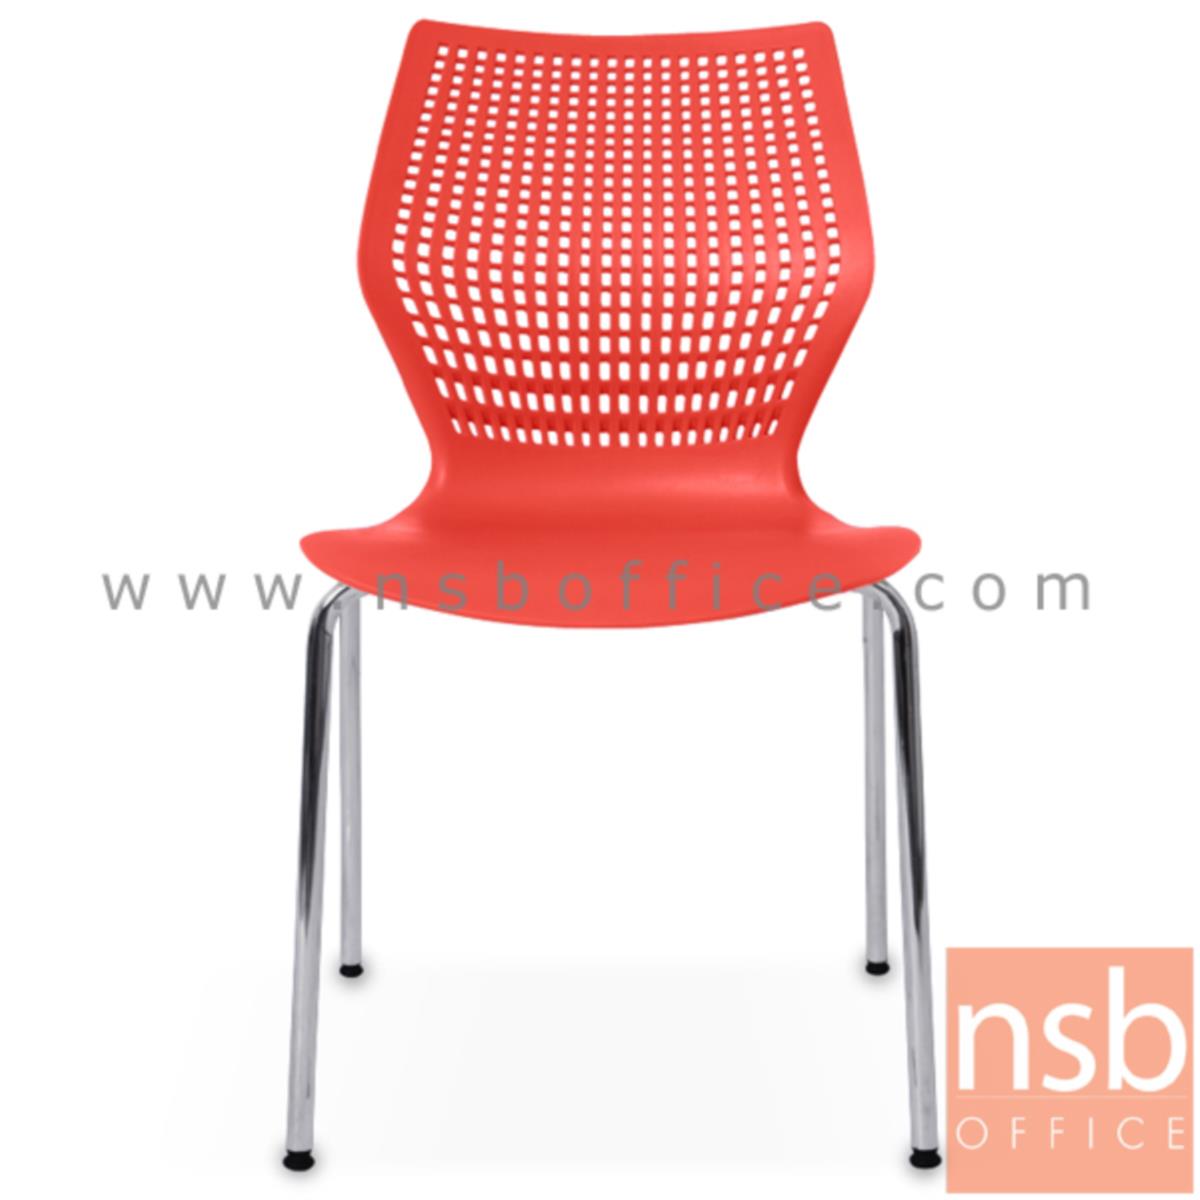 B05A071:เก้าอี้อเนกประสงค์เฟรมโพลี่ รุ่น YT-02LVL  ขาเหล็กชุบโครเมี่ยม